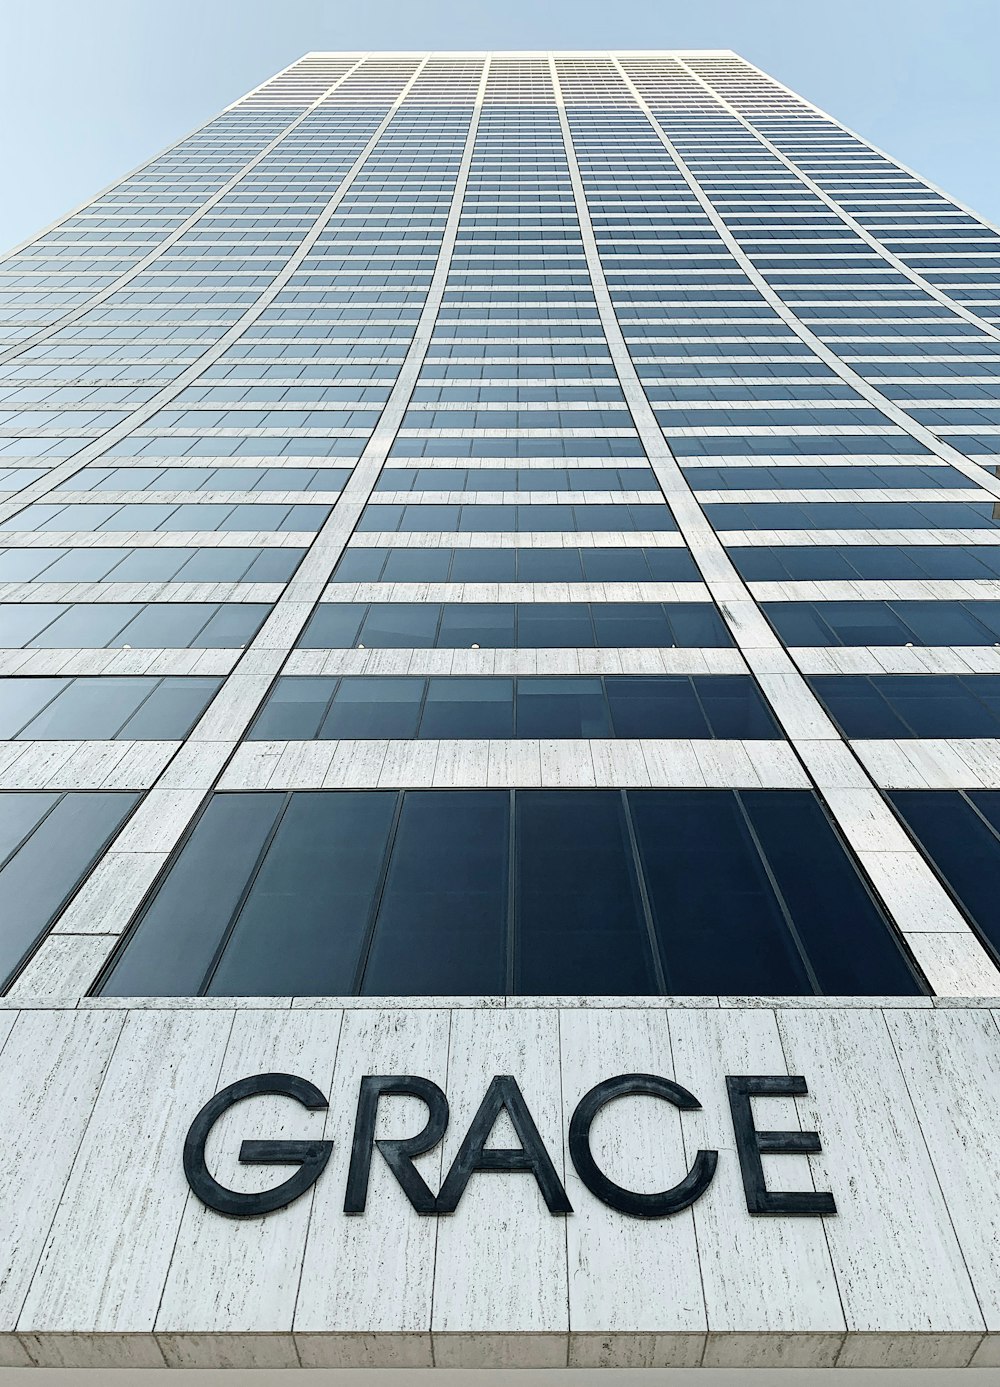 Grace high rise building